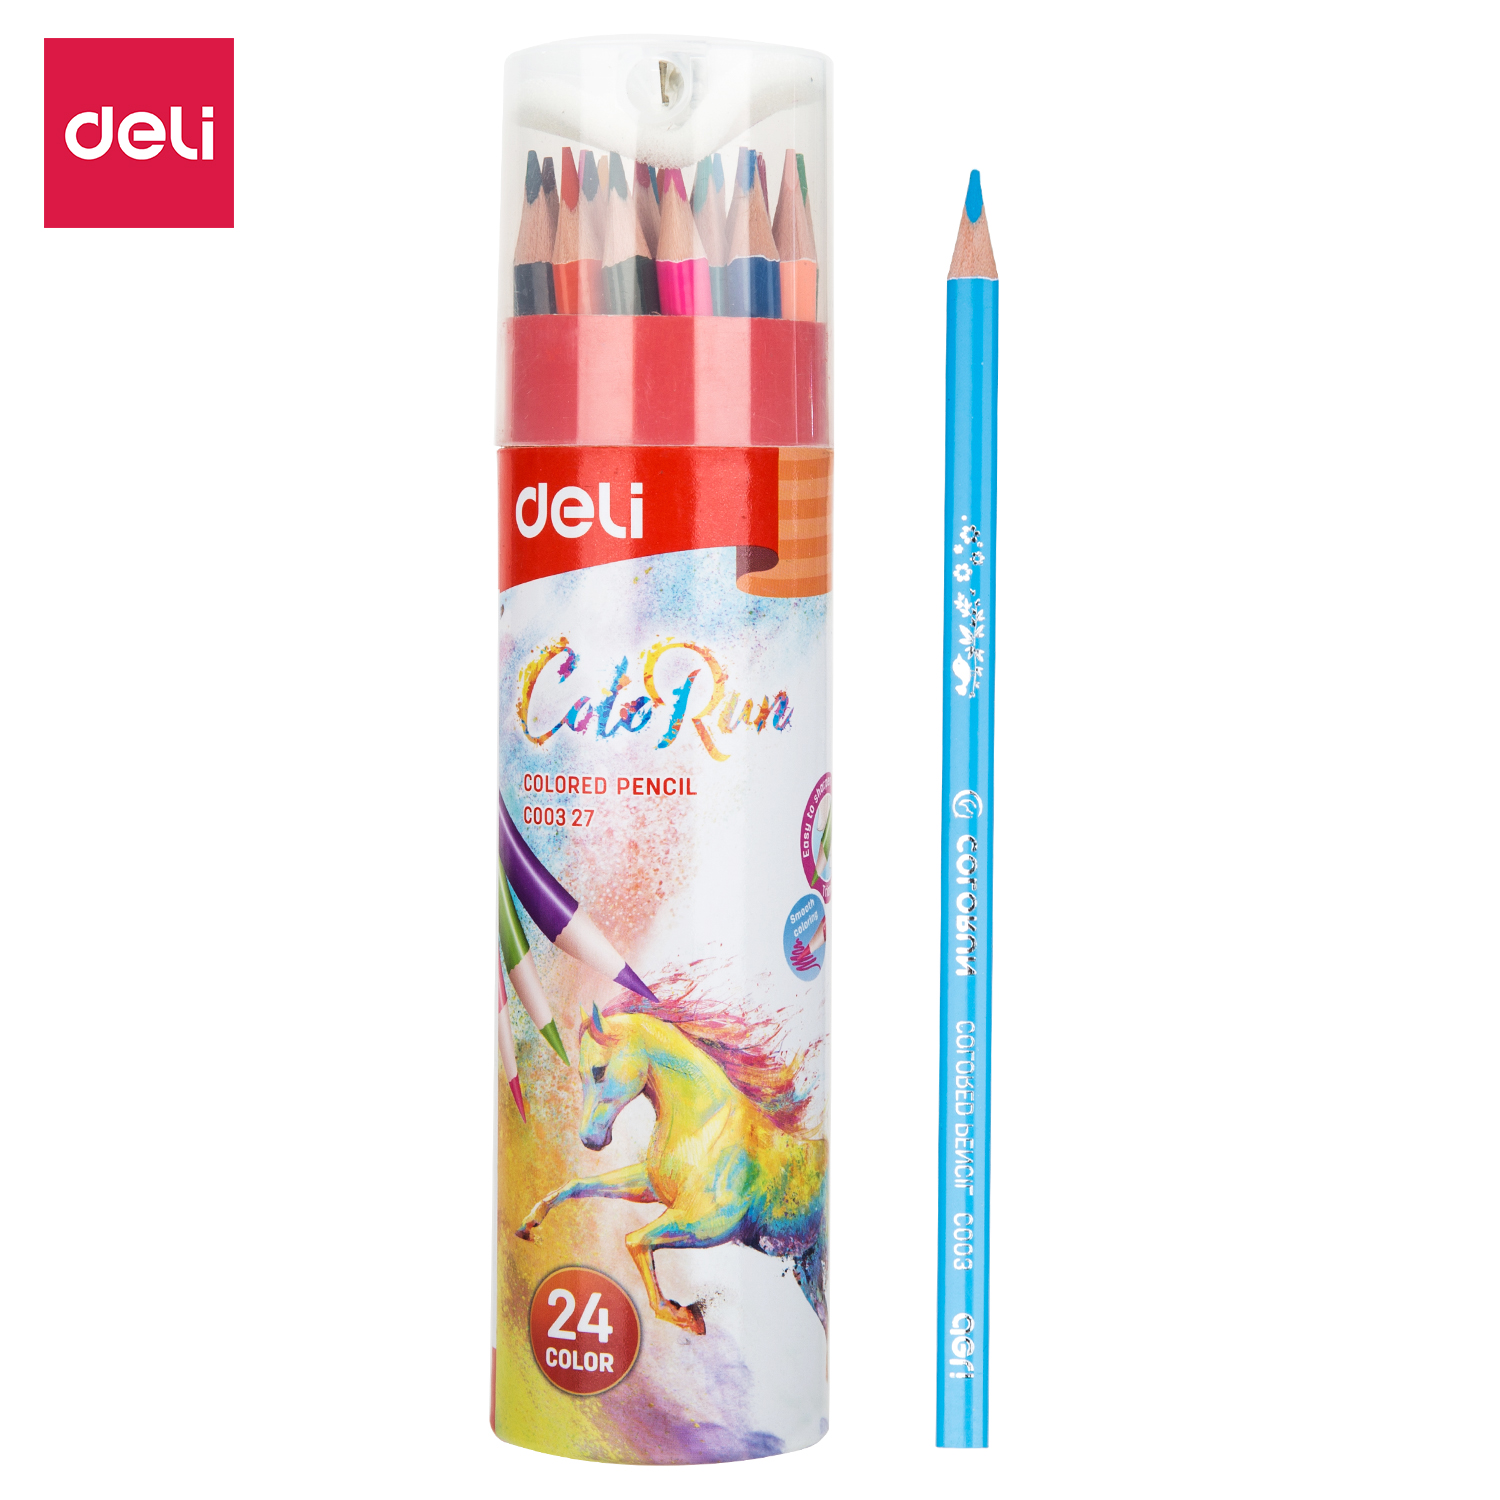 Deli-EC00327 Colored Pencil